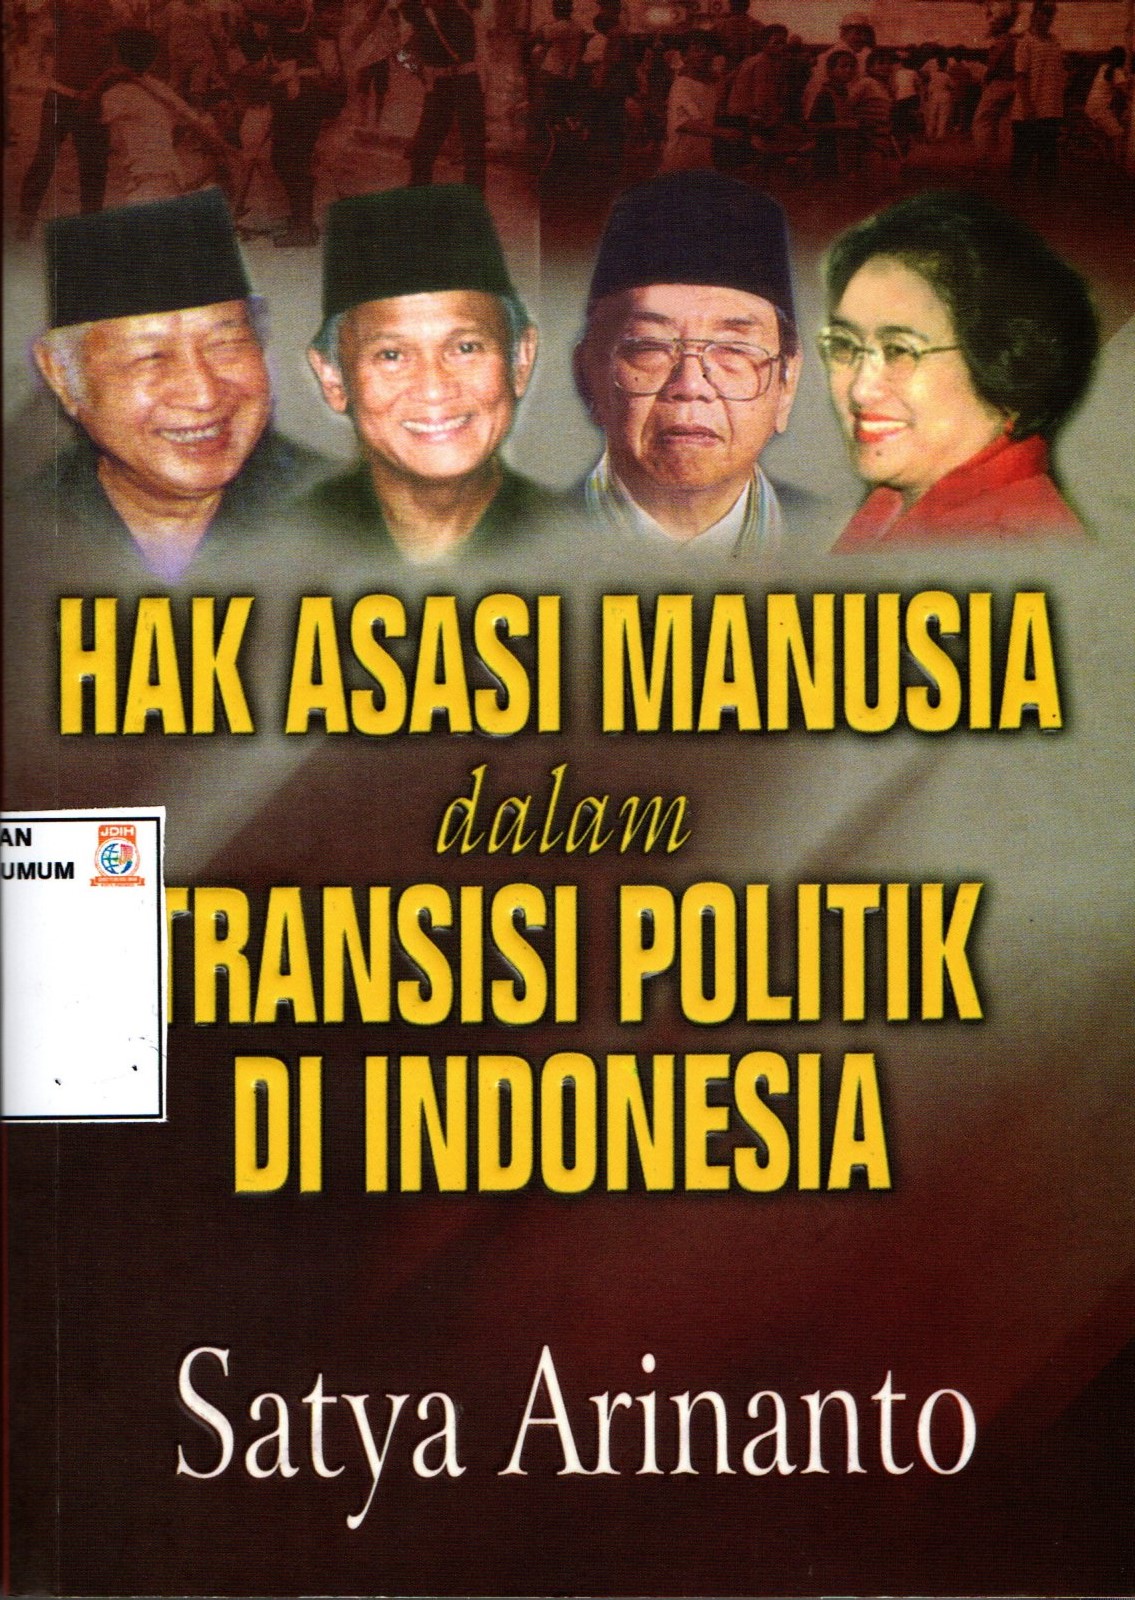 HAK ASASI MANUSIA DALAM TRANSISI POLITIK DI INDONESIA